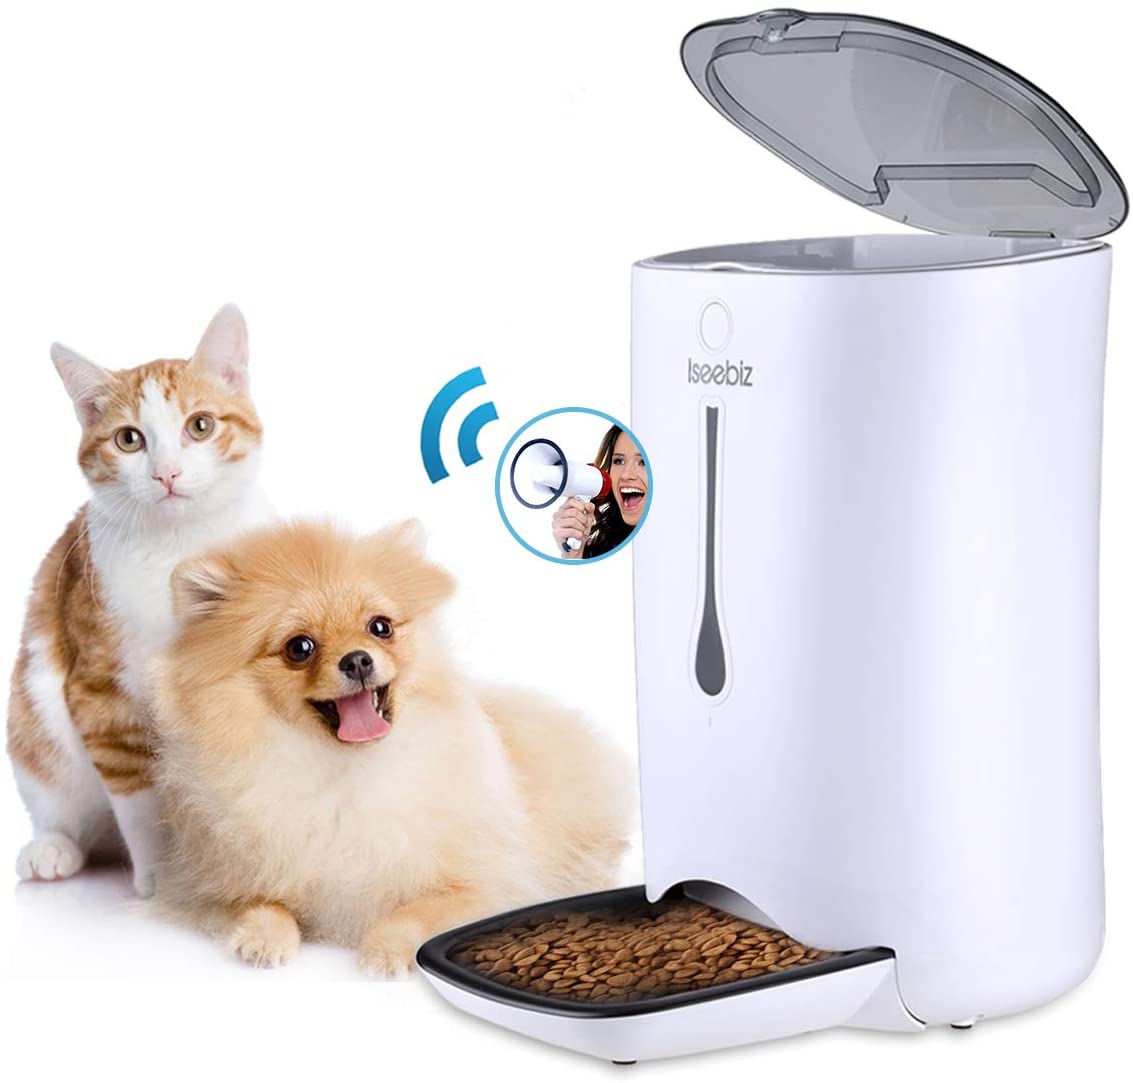  Iseebiz 7L Comedero Automtico Gatos/Perros Dispensador Comida para Mascotas con Recordatorio por Voz y Temporizador Programable, Pantalla LCD 